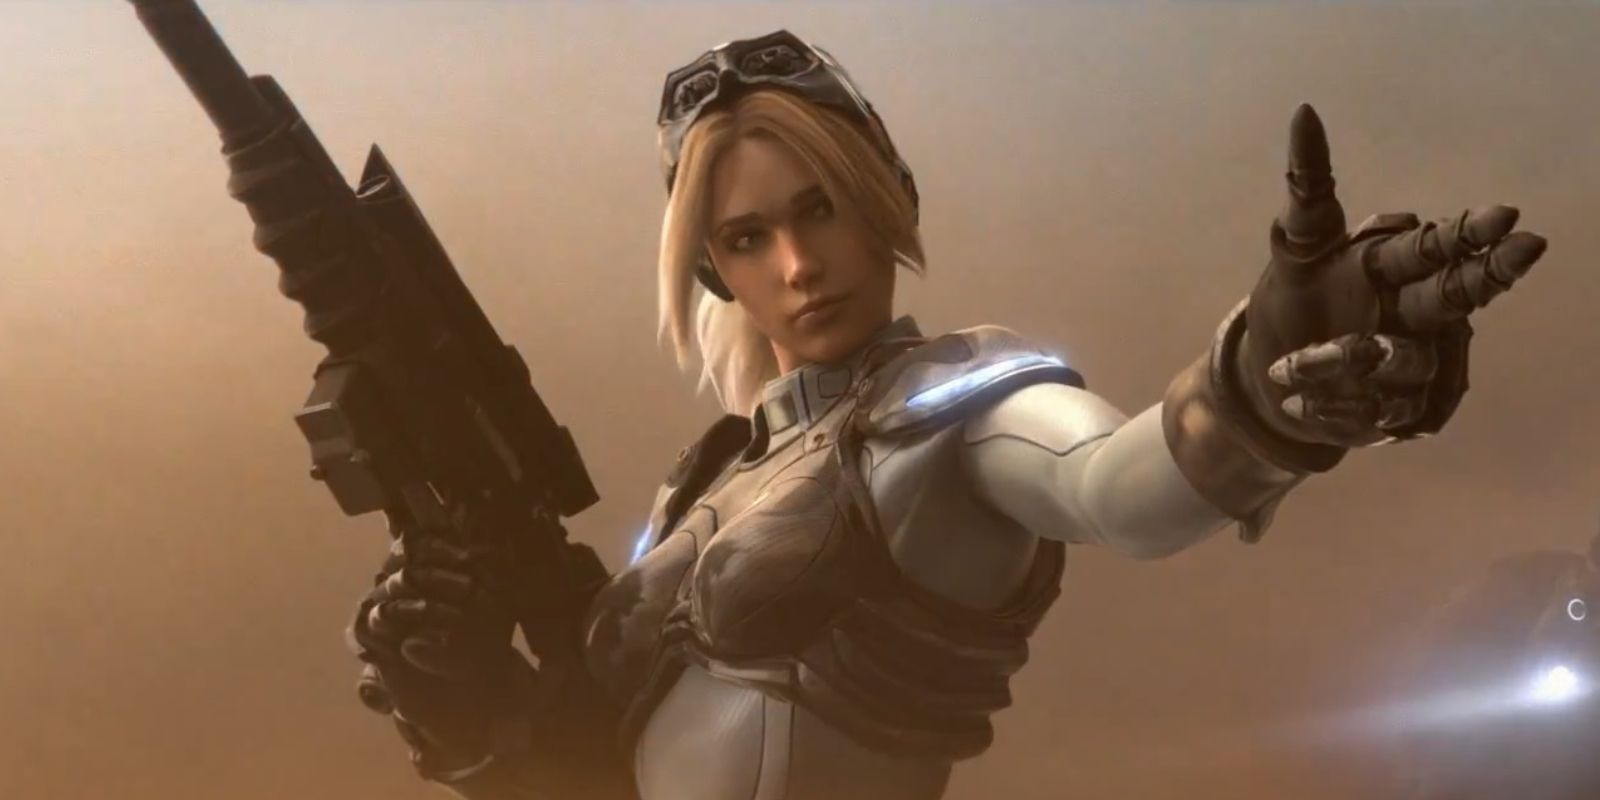 Nova extends her hand in the shape of a gun in Starcraft